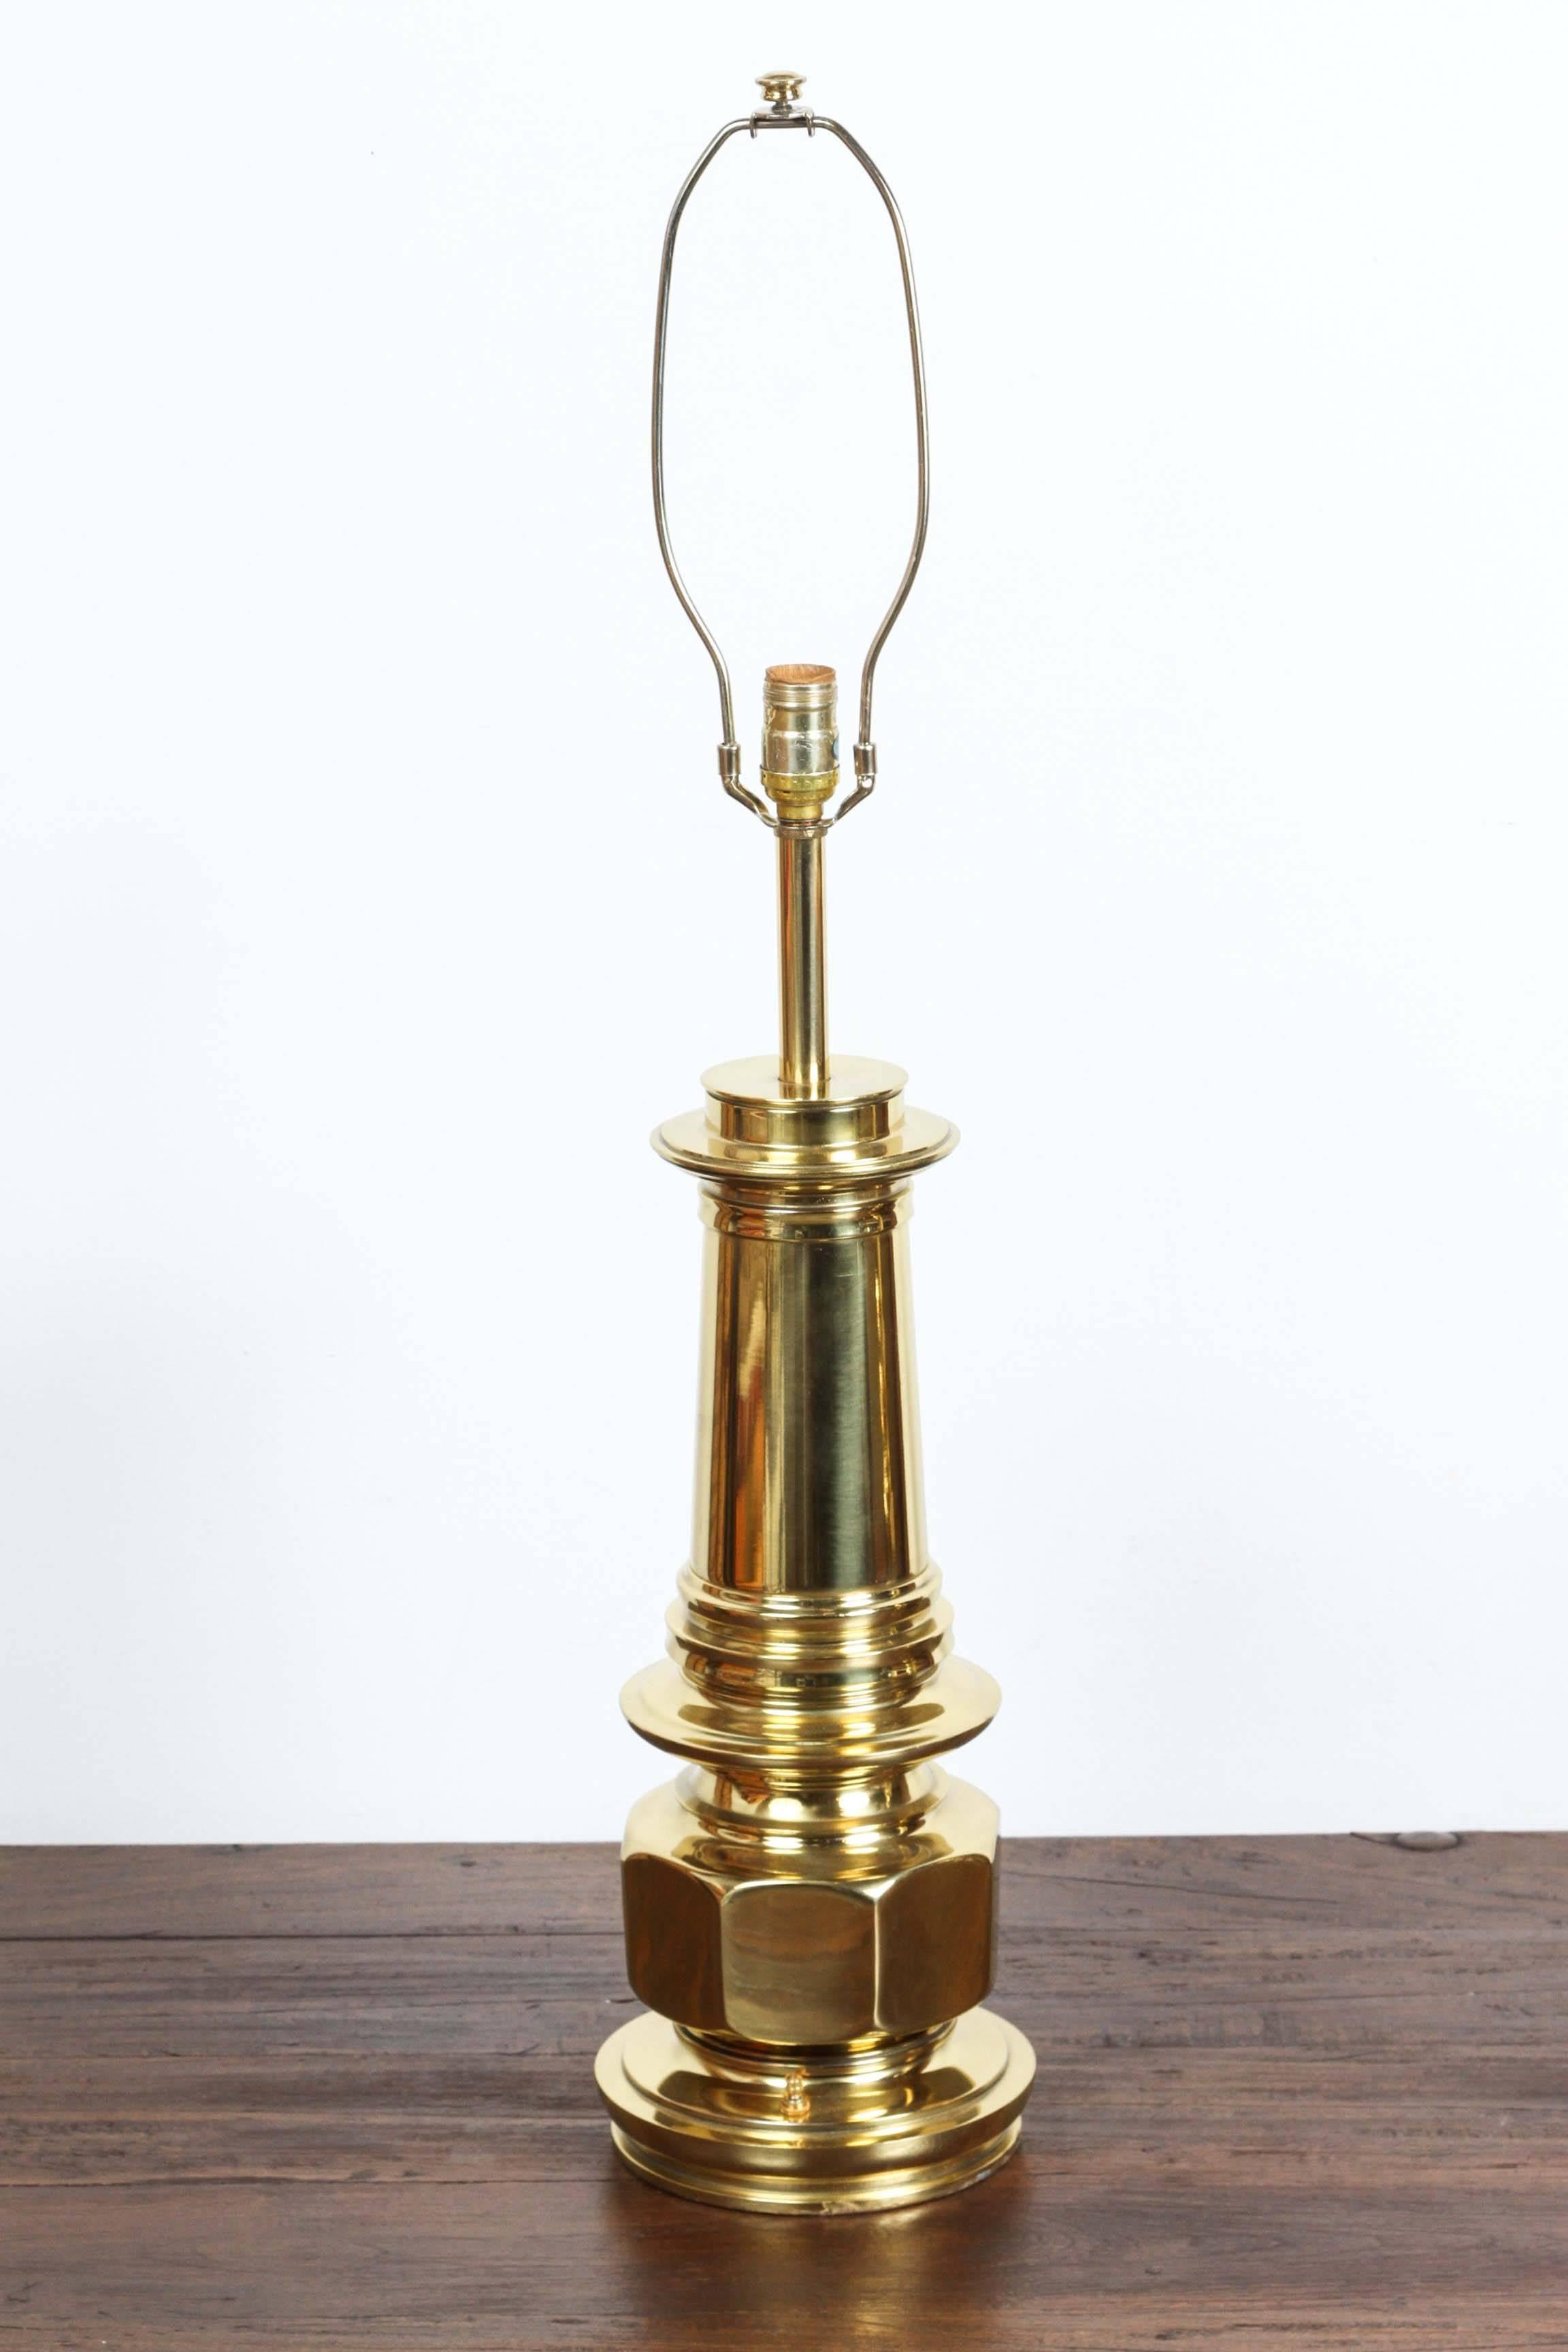 Élégante paire de lampes de table modernistes en laiton doré poli.
Fredrick Cooper Style Hollywood Regency.
Lampes de table massives en laiton massif de style marocain mauresque.
Paire de lampadaires des années 1970 conçus et fabriqués aux